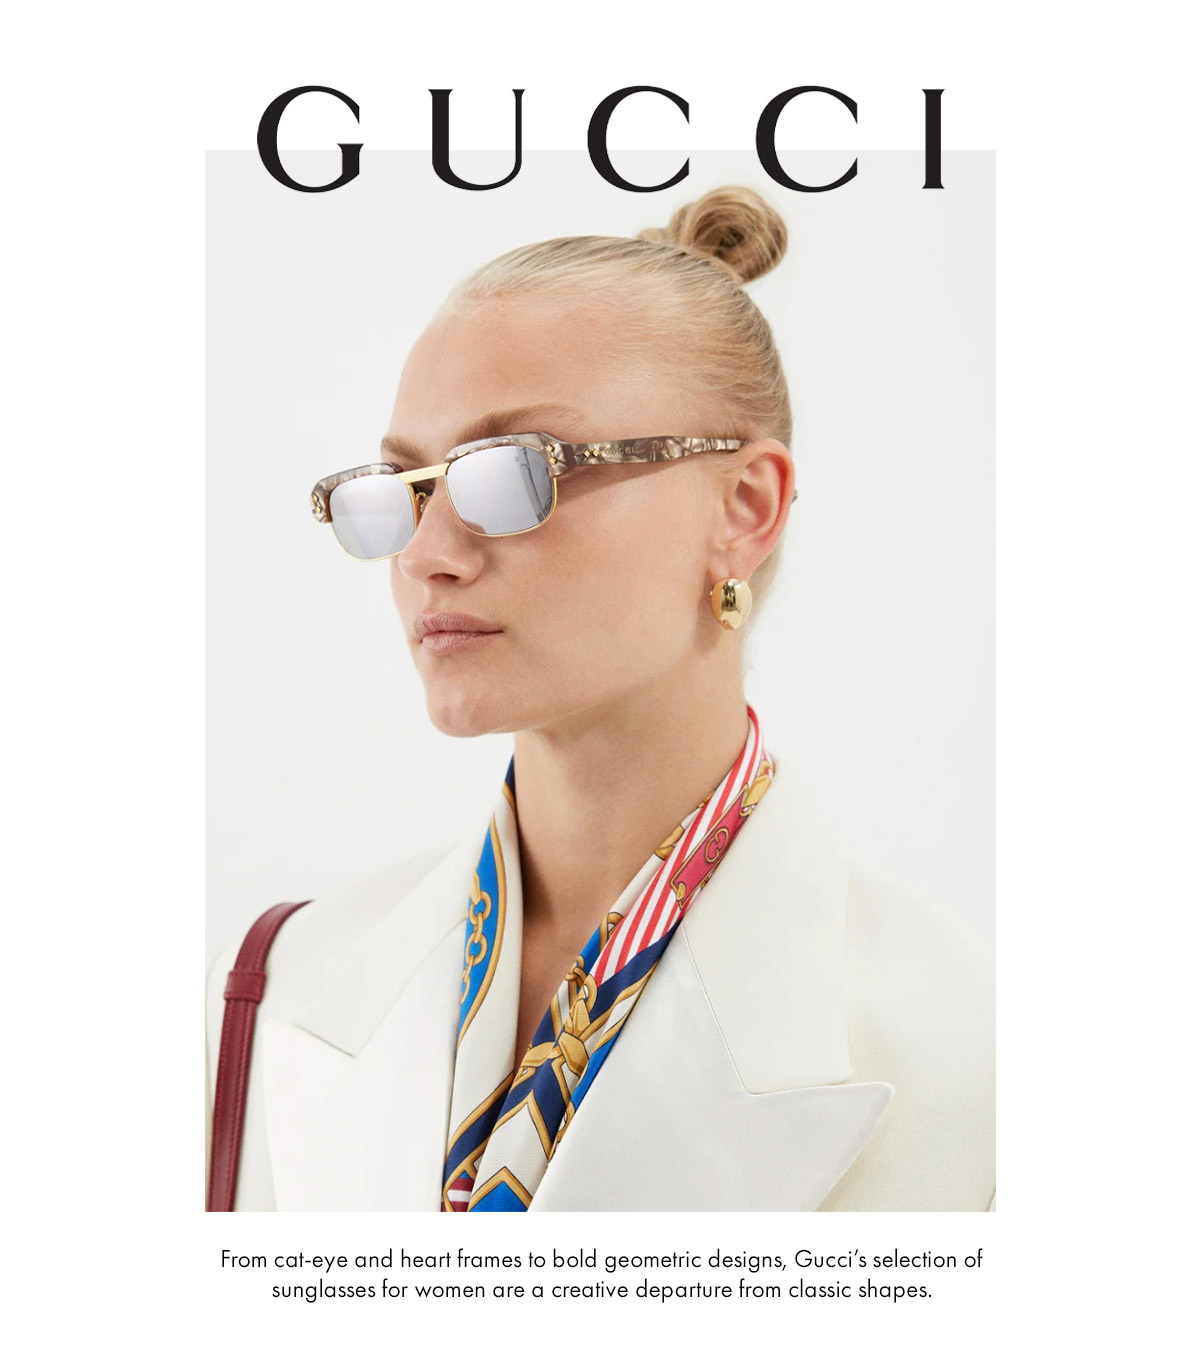 Óculos Gucci